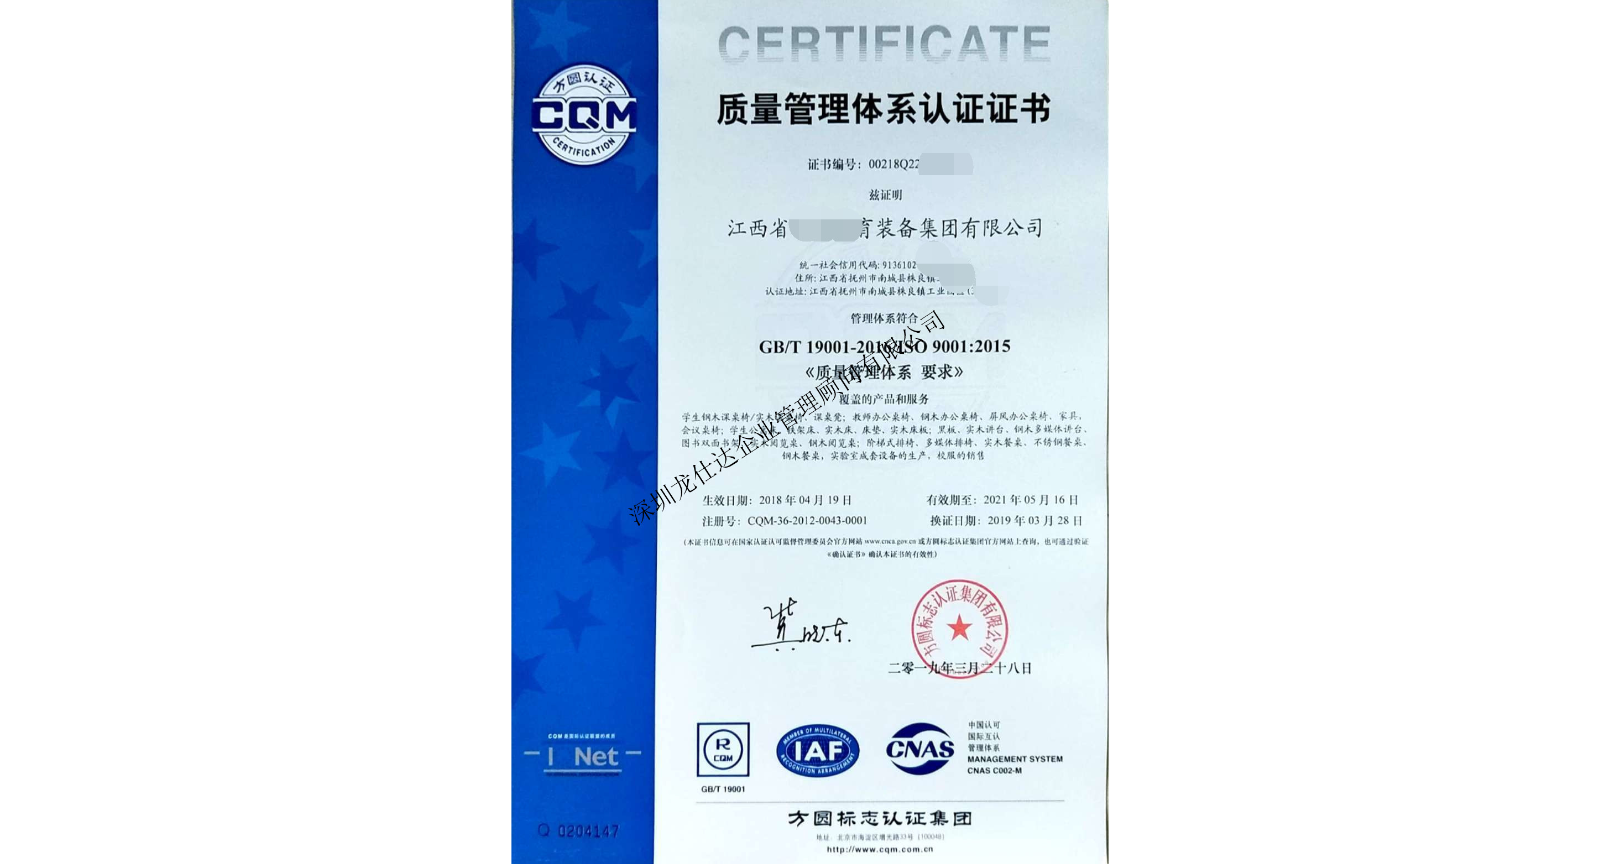 海南办理iso9001质量管理体系认证认准,体系认证